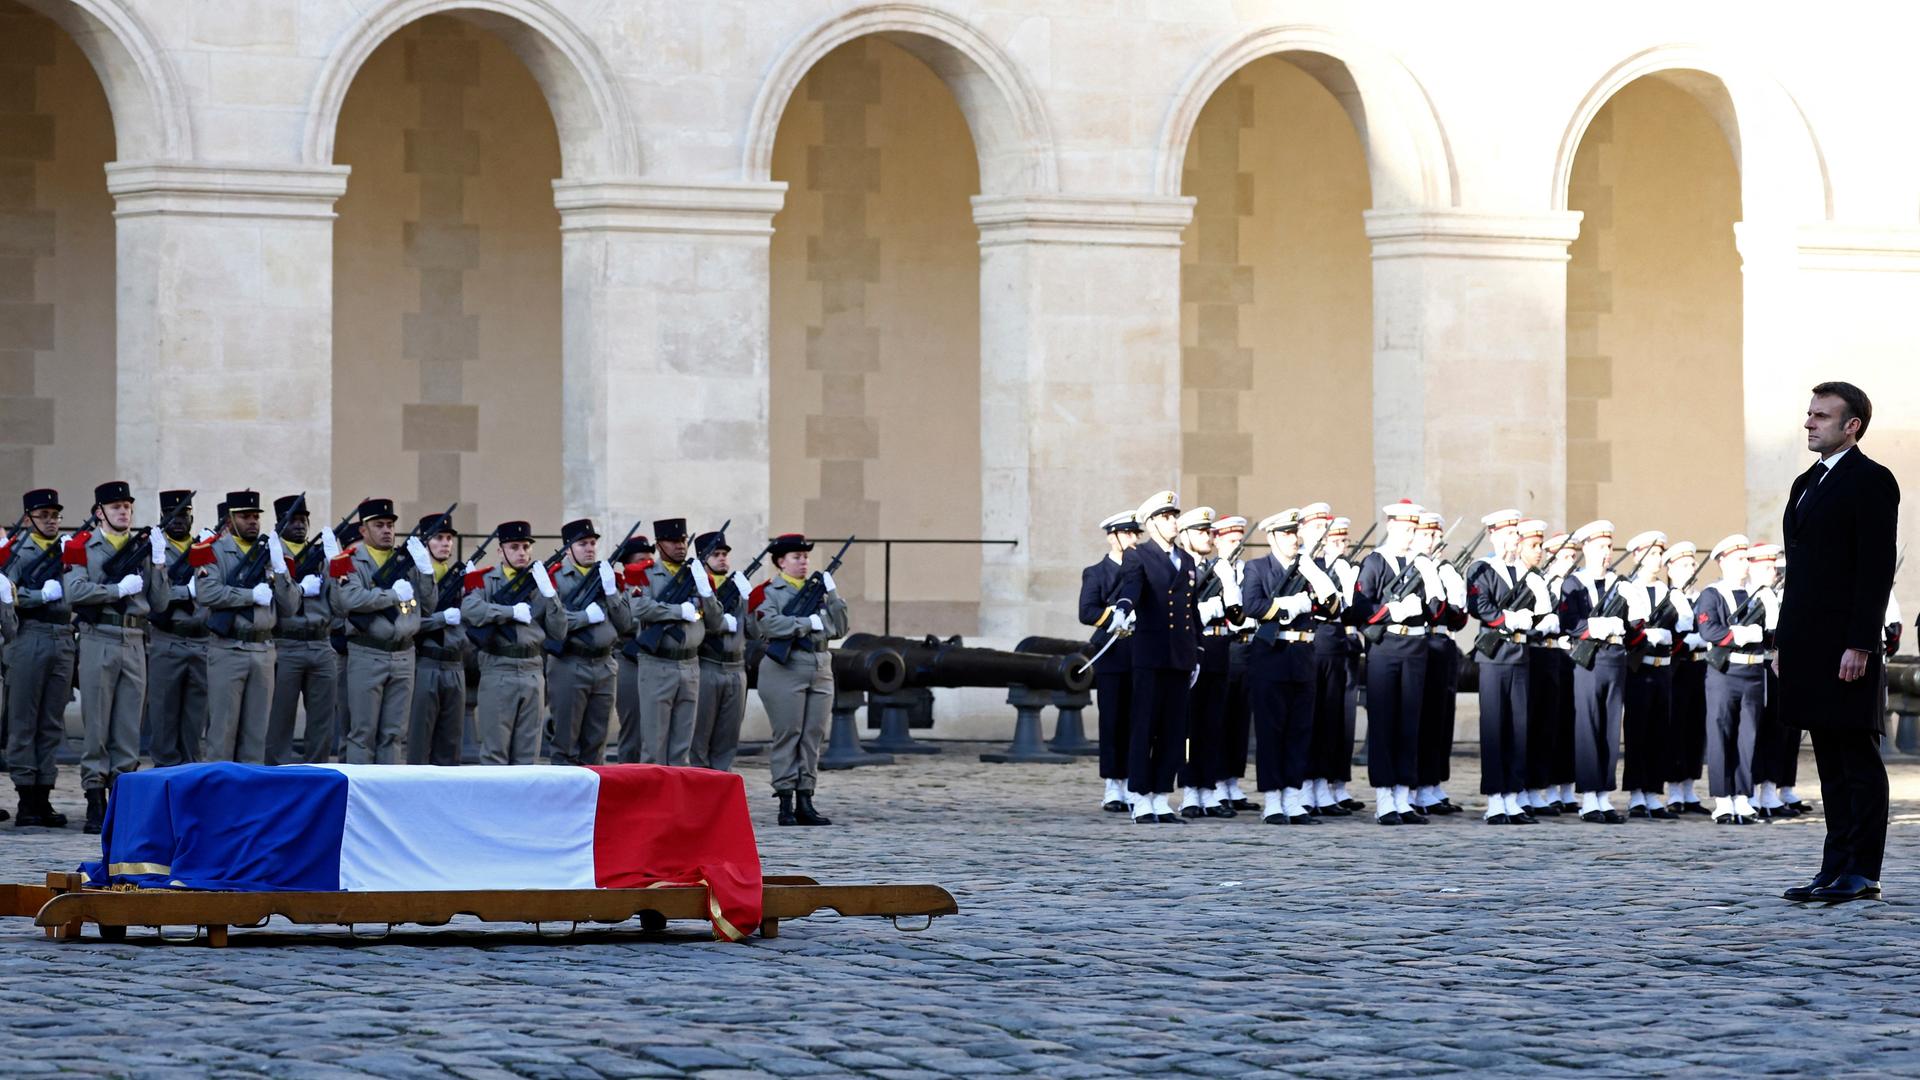 Macron steht vor dem mit einer Frankreich-Flagge bedeckten Sarg, der auf dem Boden steht. Dahinter Soldaten und ein Musikcorps in Reih und Glied.